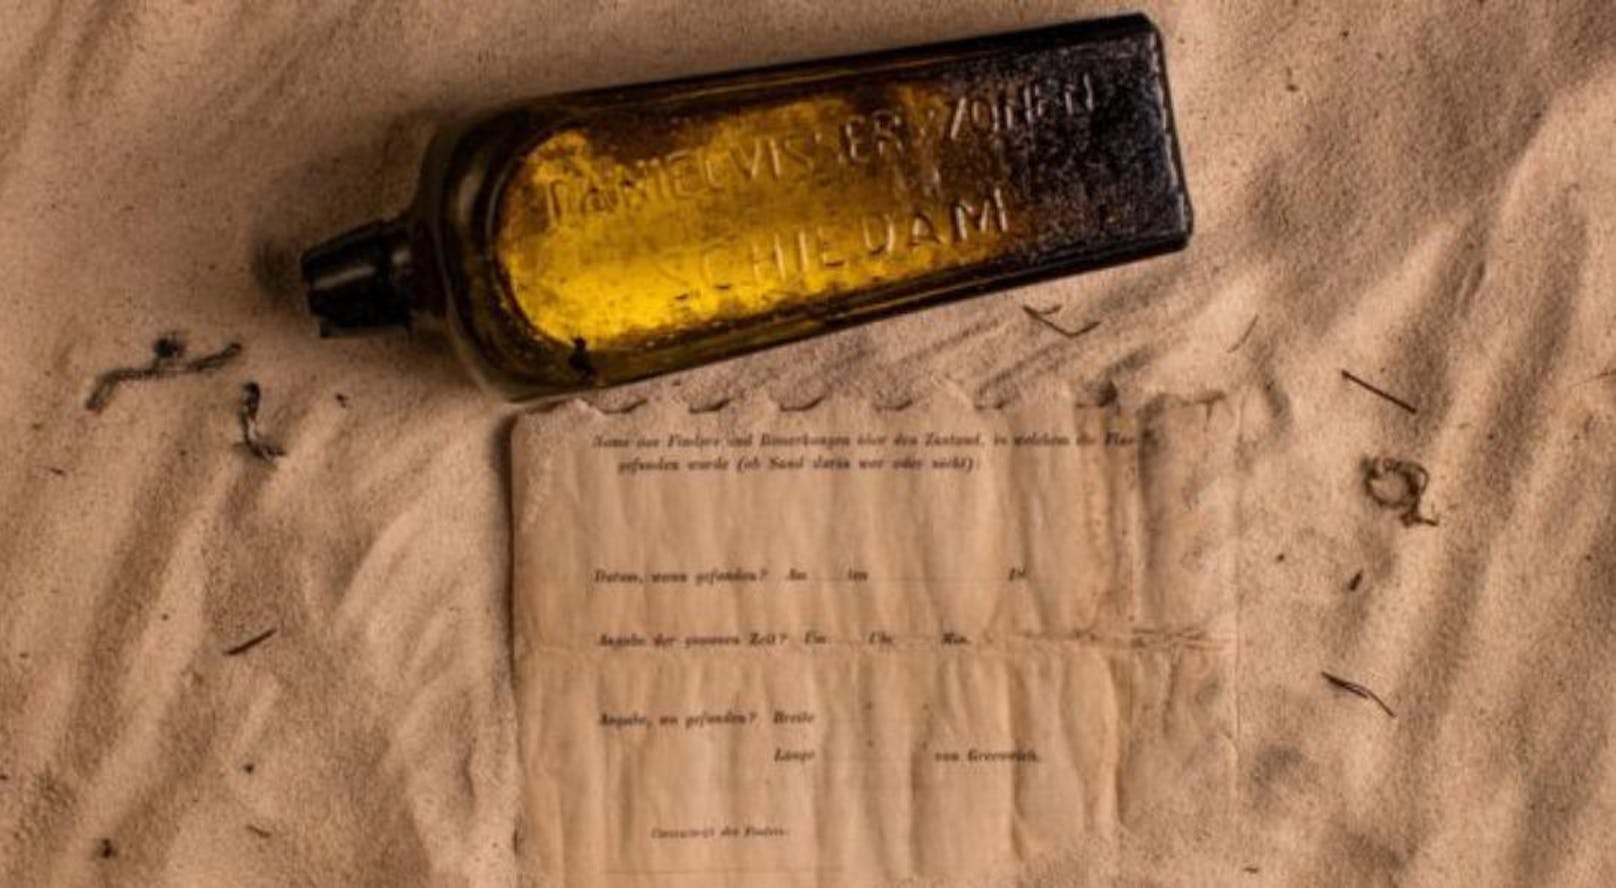 Experten bestätigten, dass die Flasche 1886 im Rahmen eines deutschen ozeanographischen Experiments abgeworfen wurde. (Quelle: KylIllman.com)